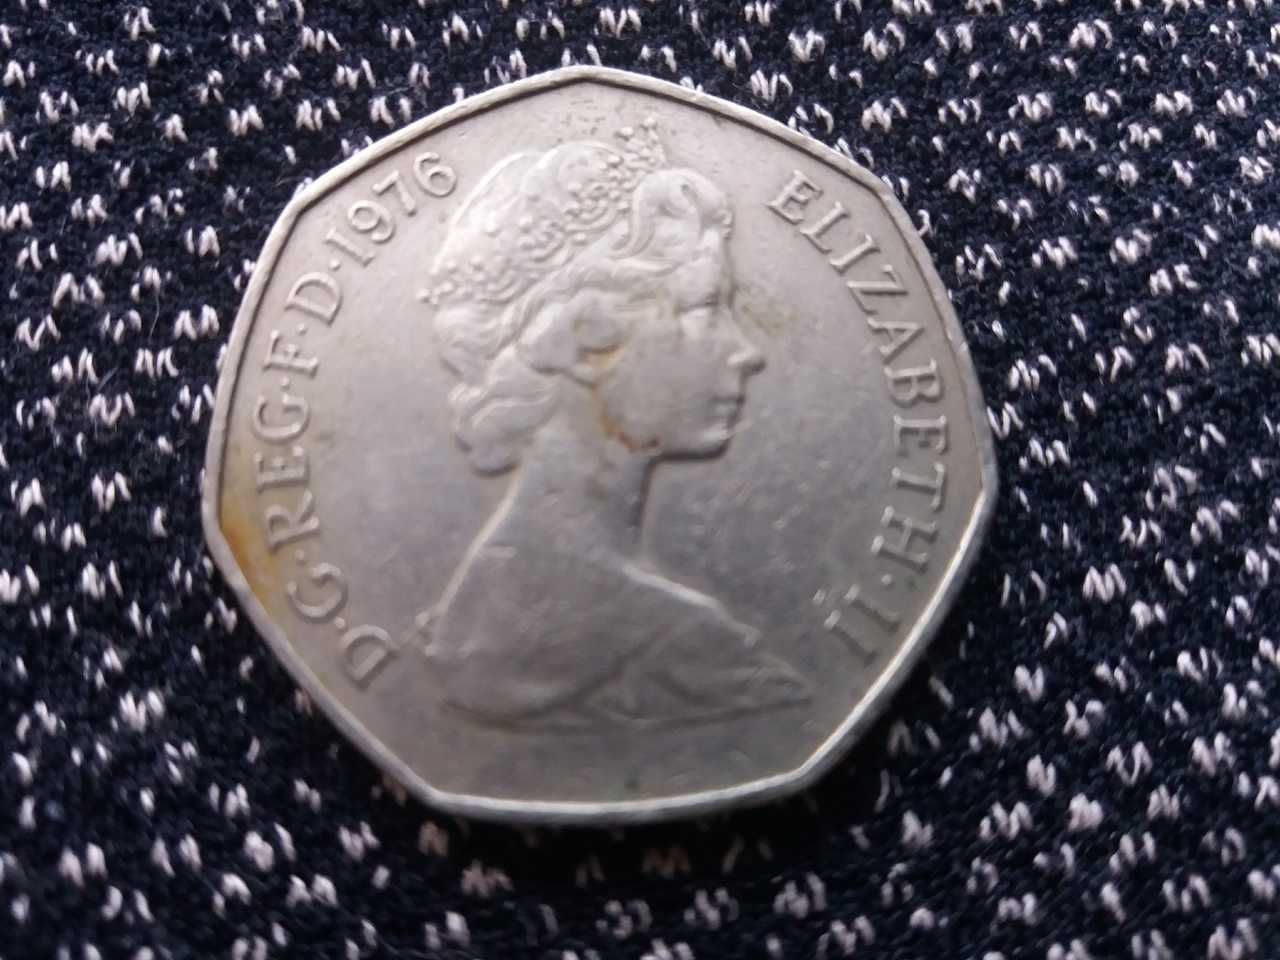 10 марок (серебро). 50 пенсов юбилейные и 20 тенге юбилейные